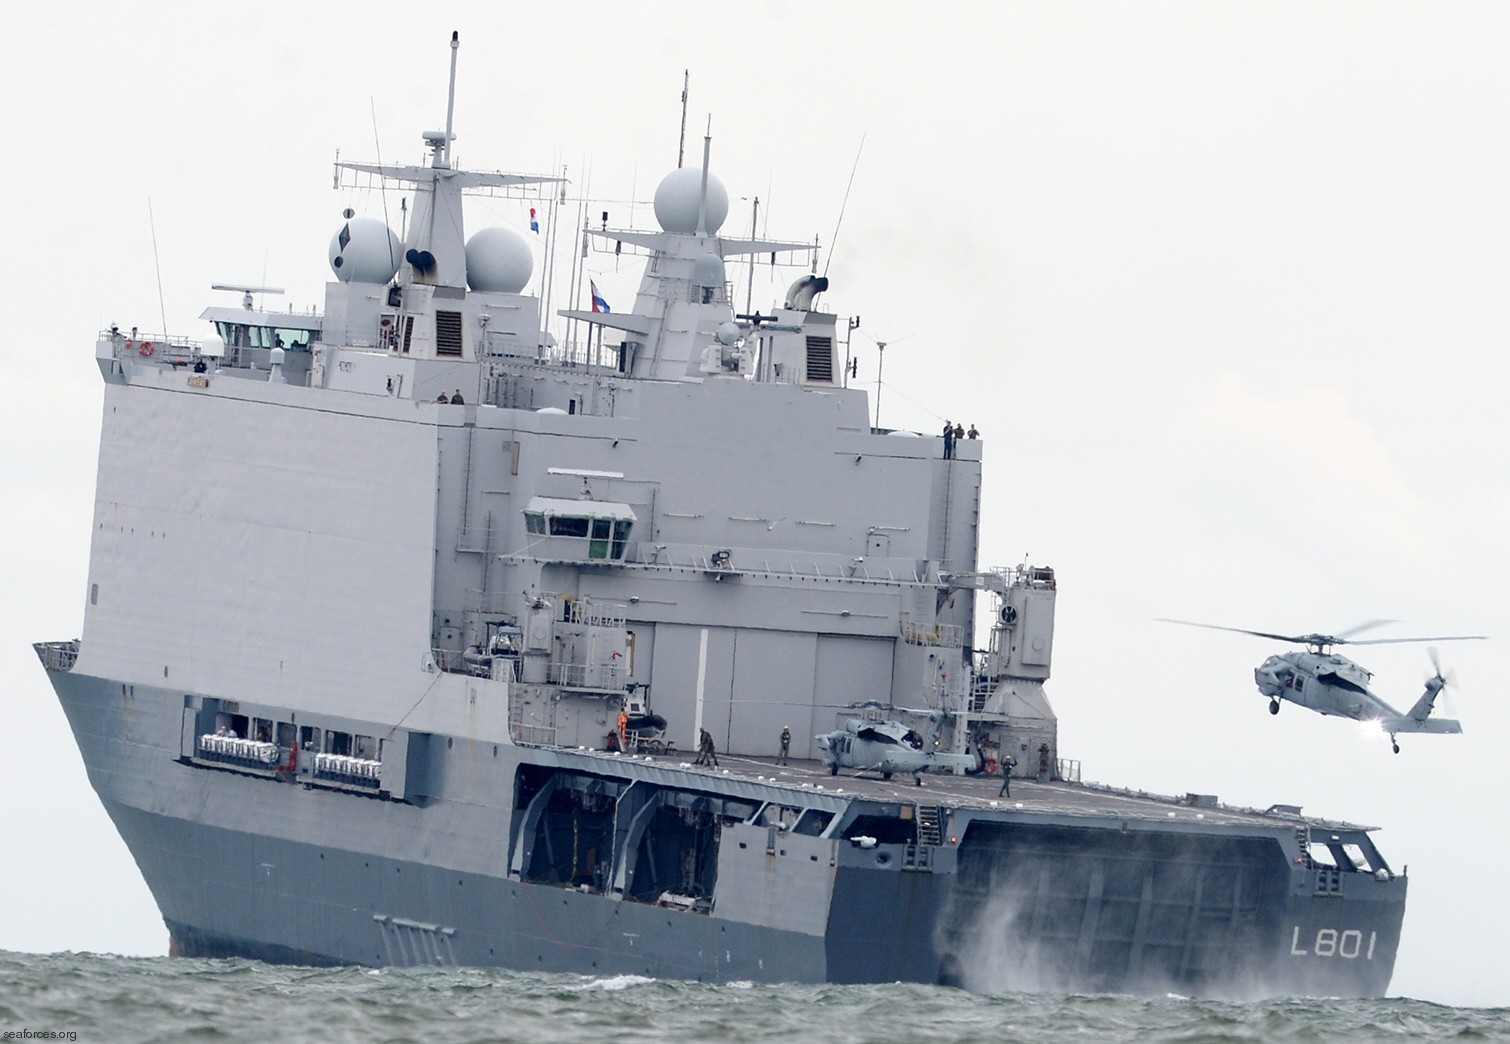 l-801 hnlms johan de witt amphibious ship landing platform dock lpd royal netherlands navy 13 helicopter operations